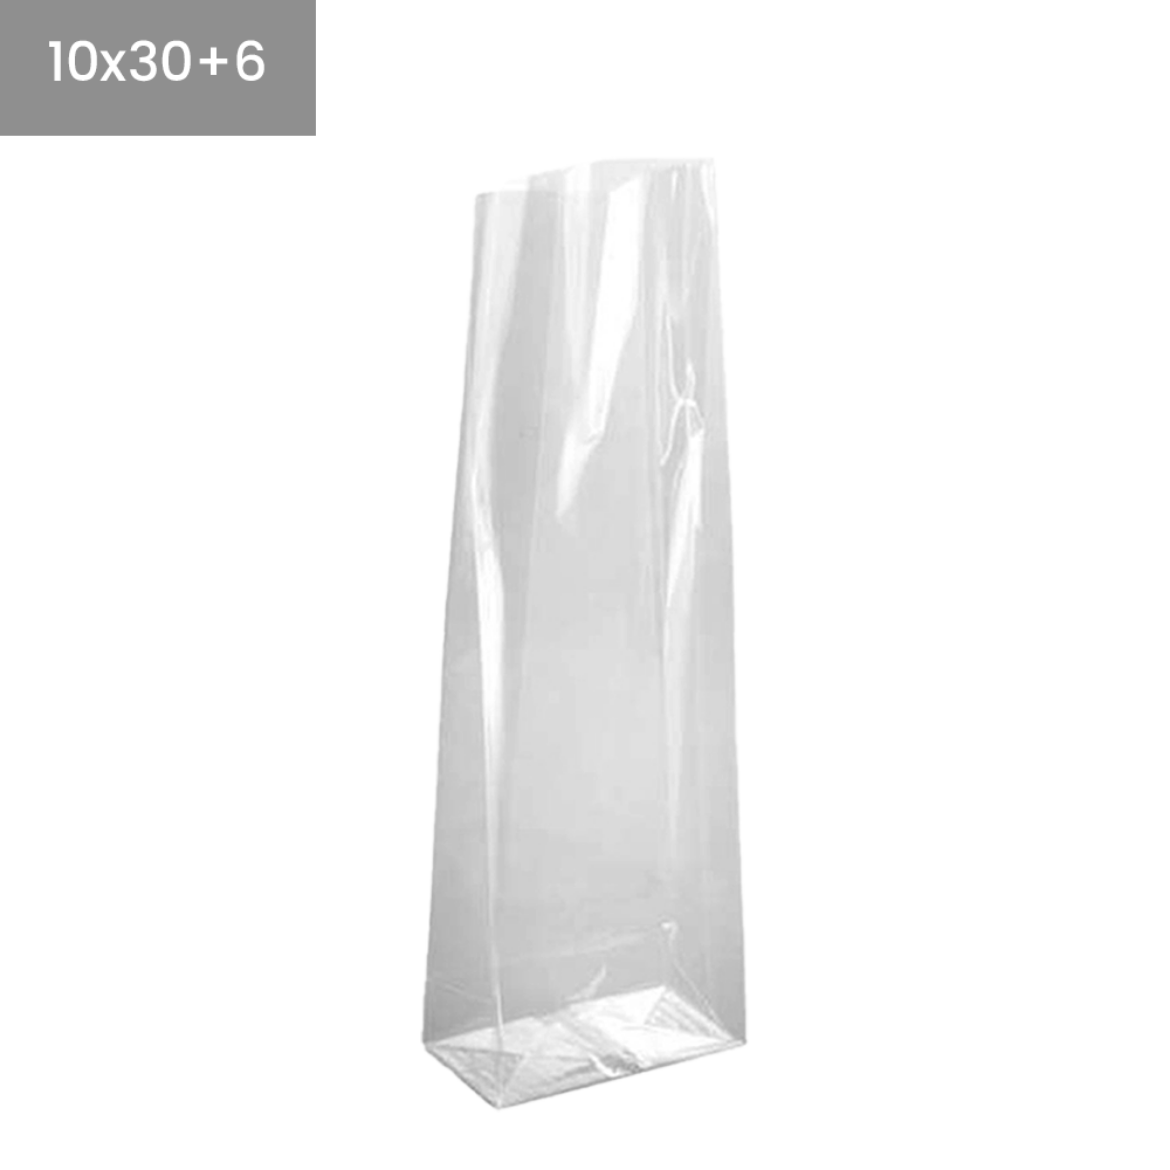 Bolsas de plástico transparentes base cuadrada 10x30+6